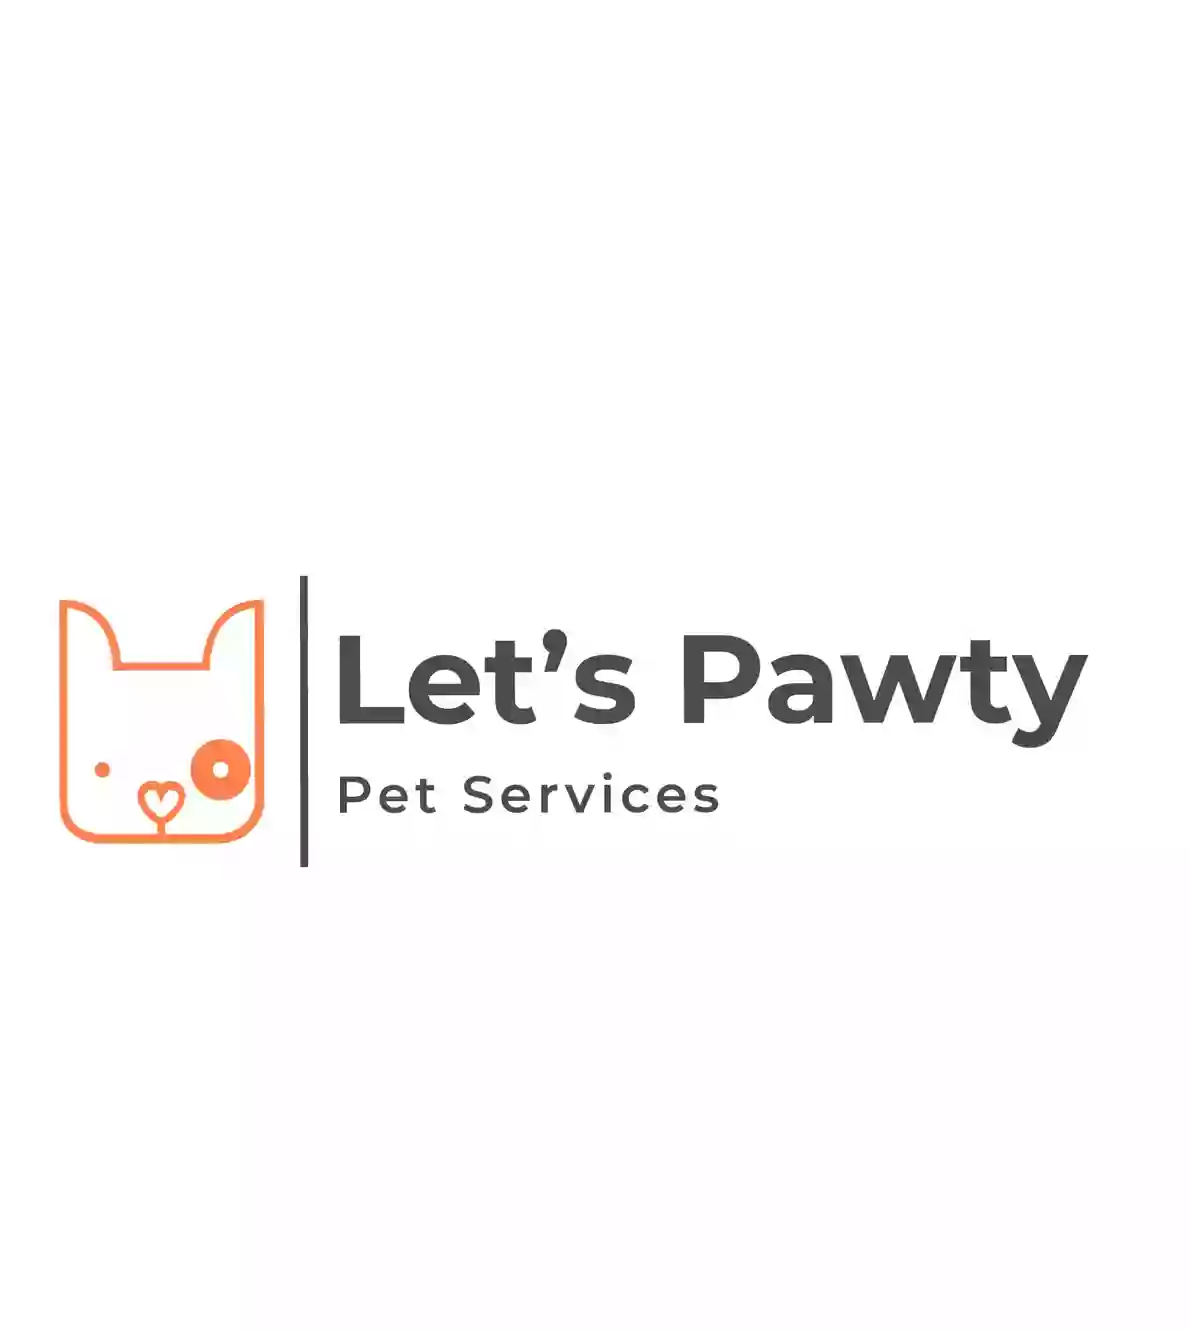 Let's Pawty Pet Services